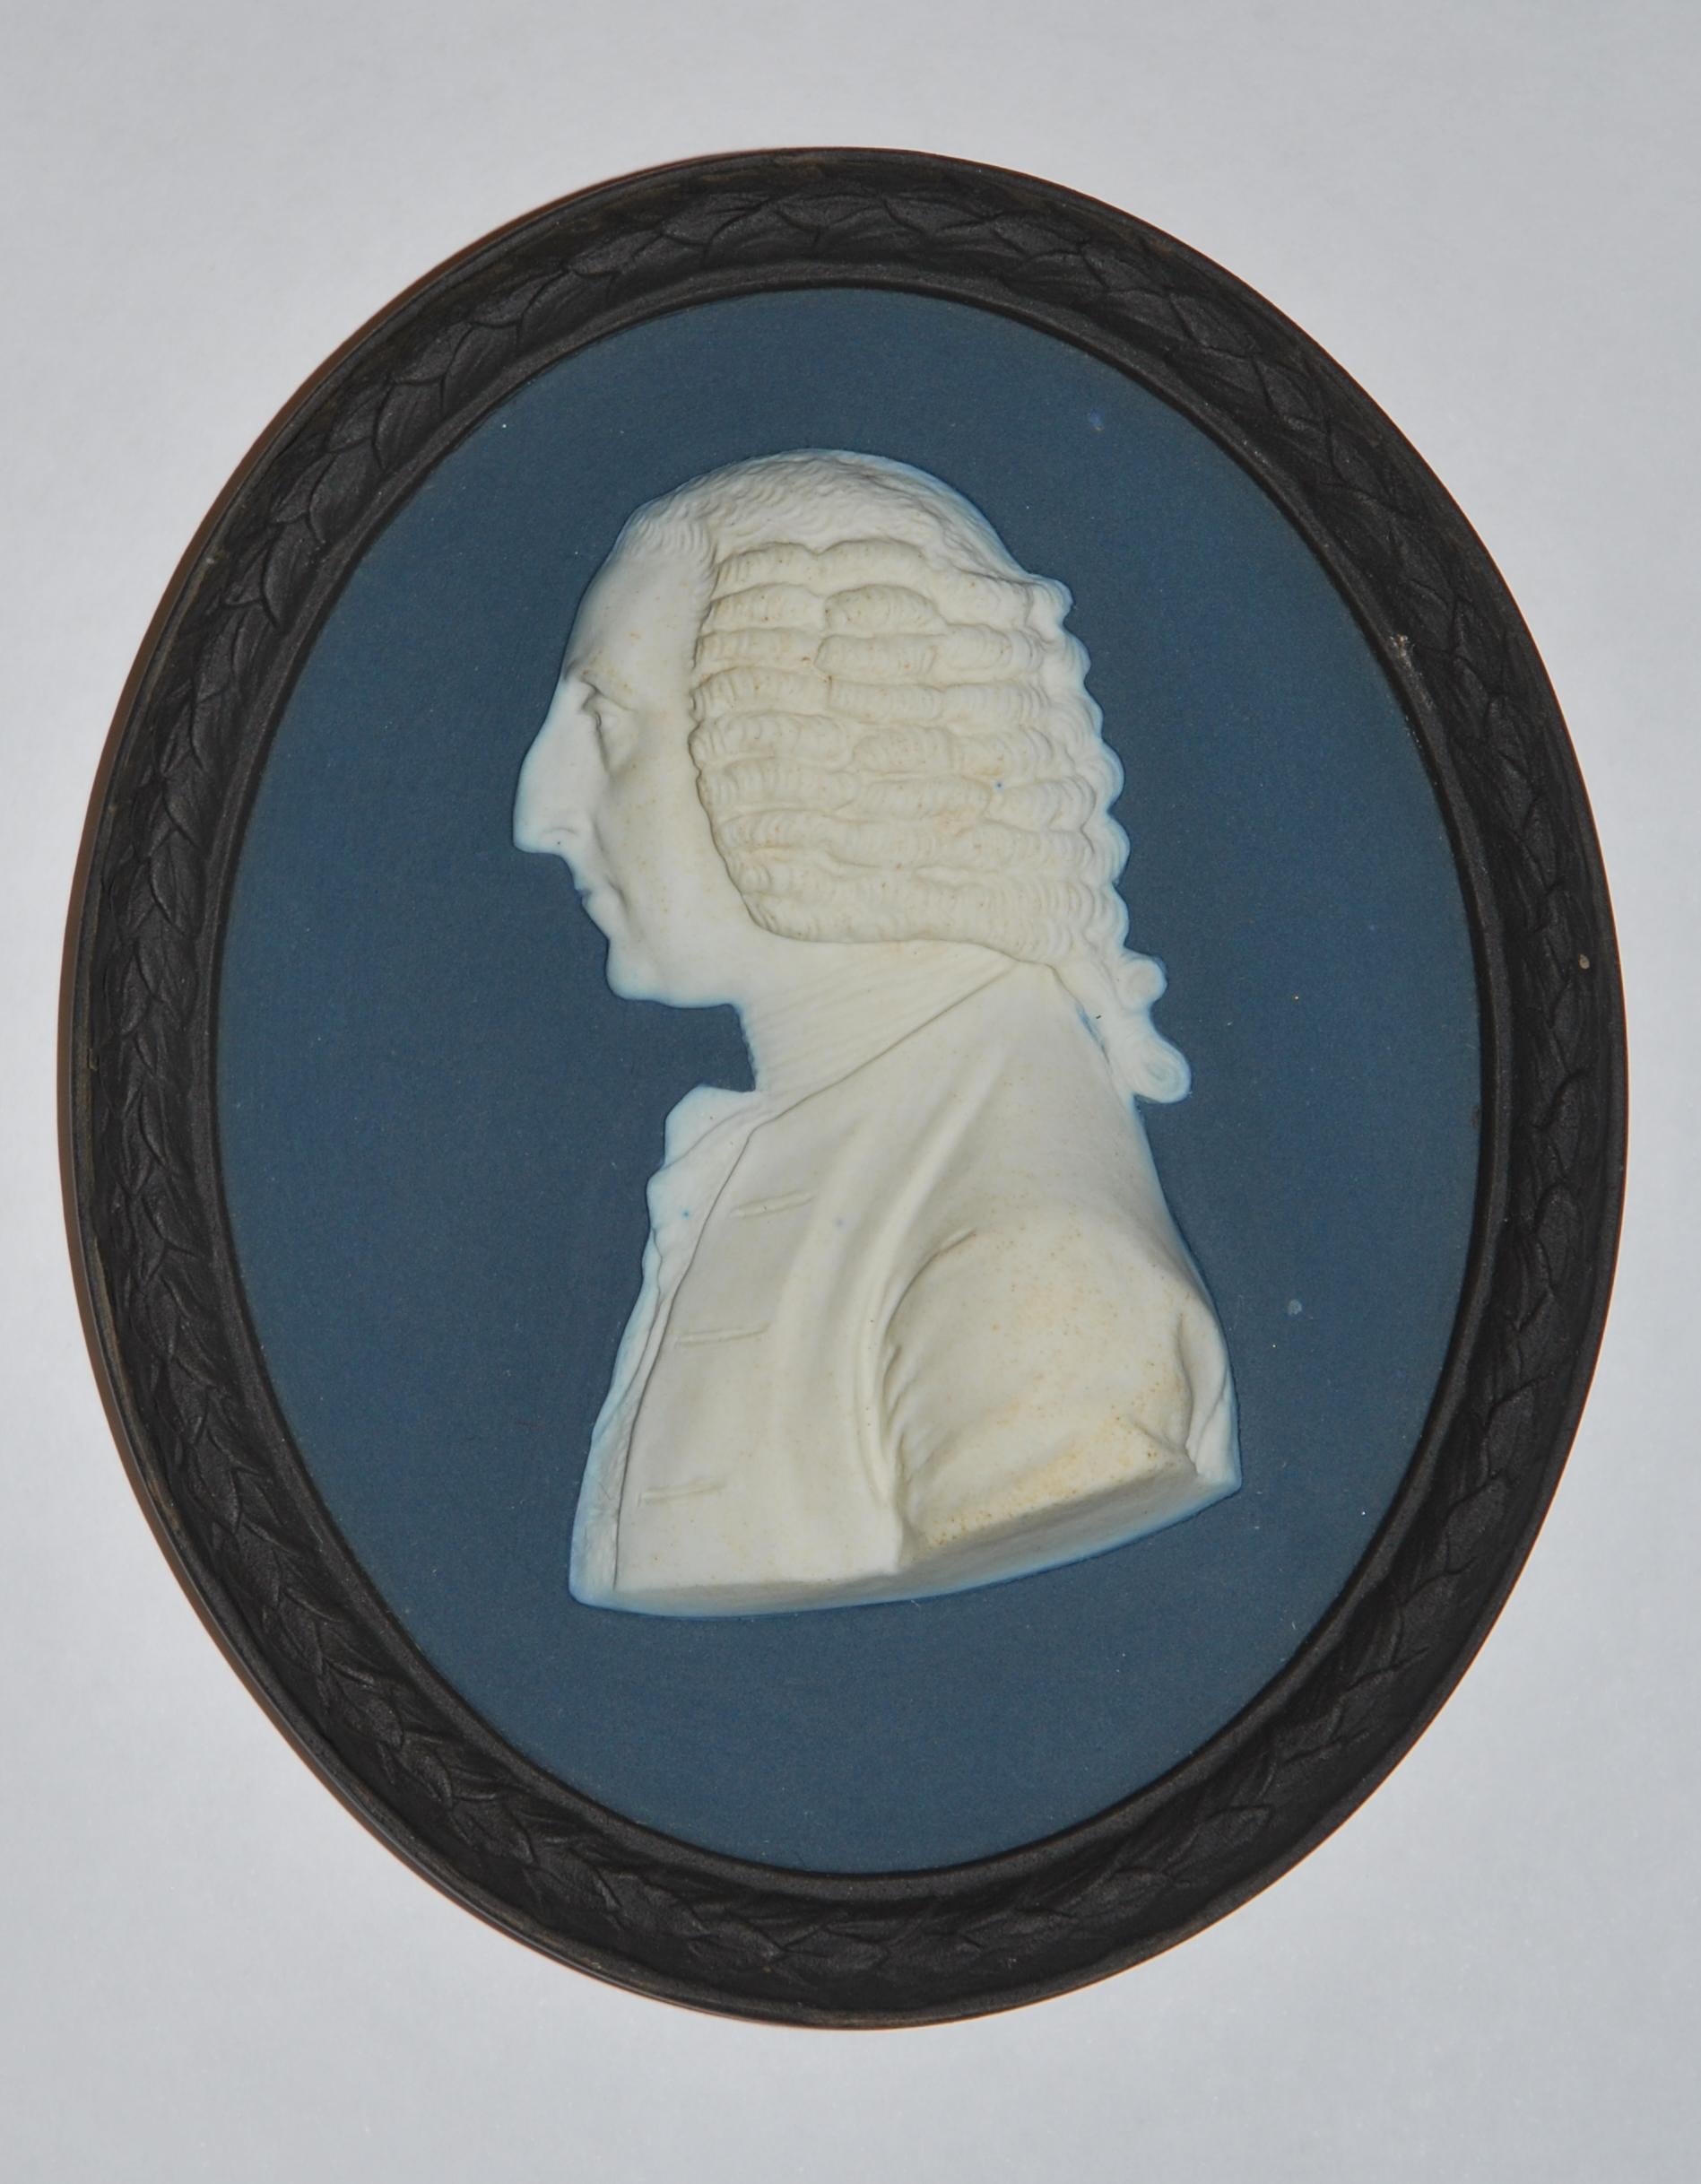 Ein schönes dreifarbiges Porträtmedaillon des ersten Earl of Chatham (1708-1778), eines Whig-Staatsmannes, der Großbritannien während des Siebenjährigen Krieges führte. 

Die Verzierung stammt von Bert Bentley, einem der besten Dekorateure